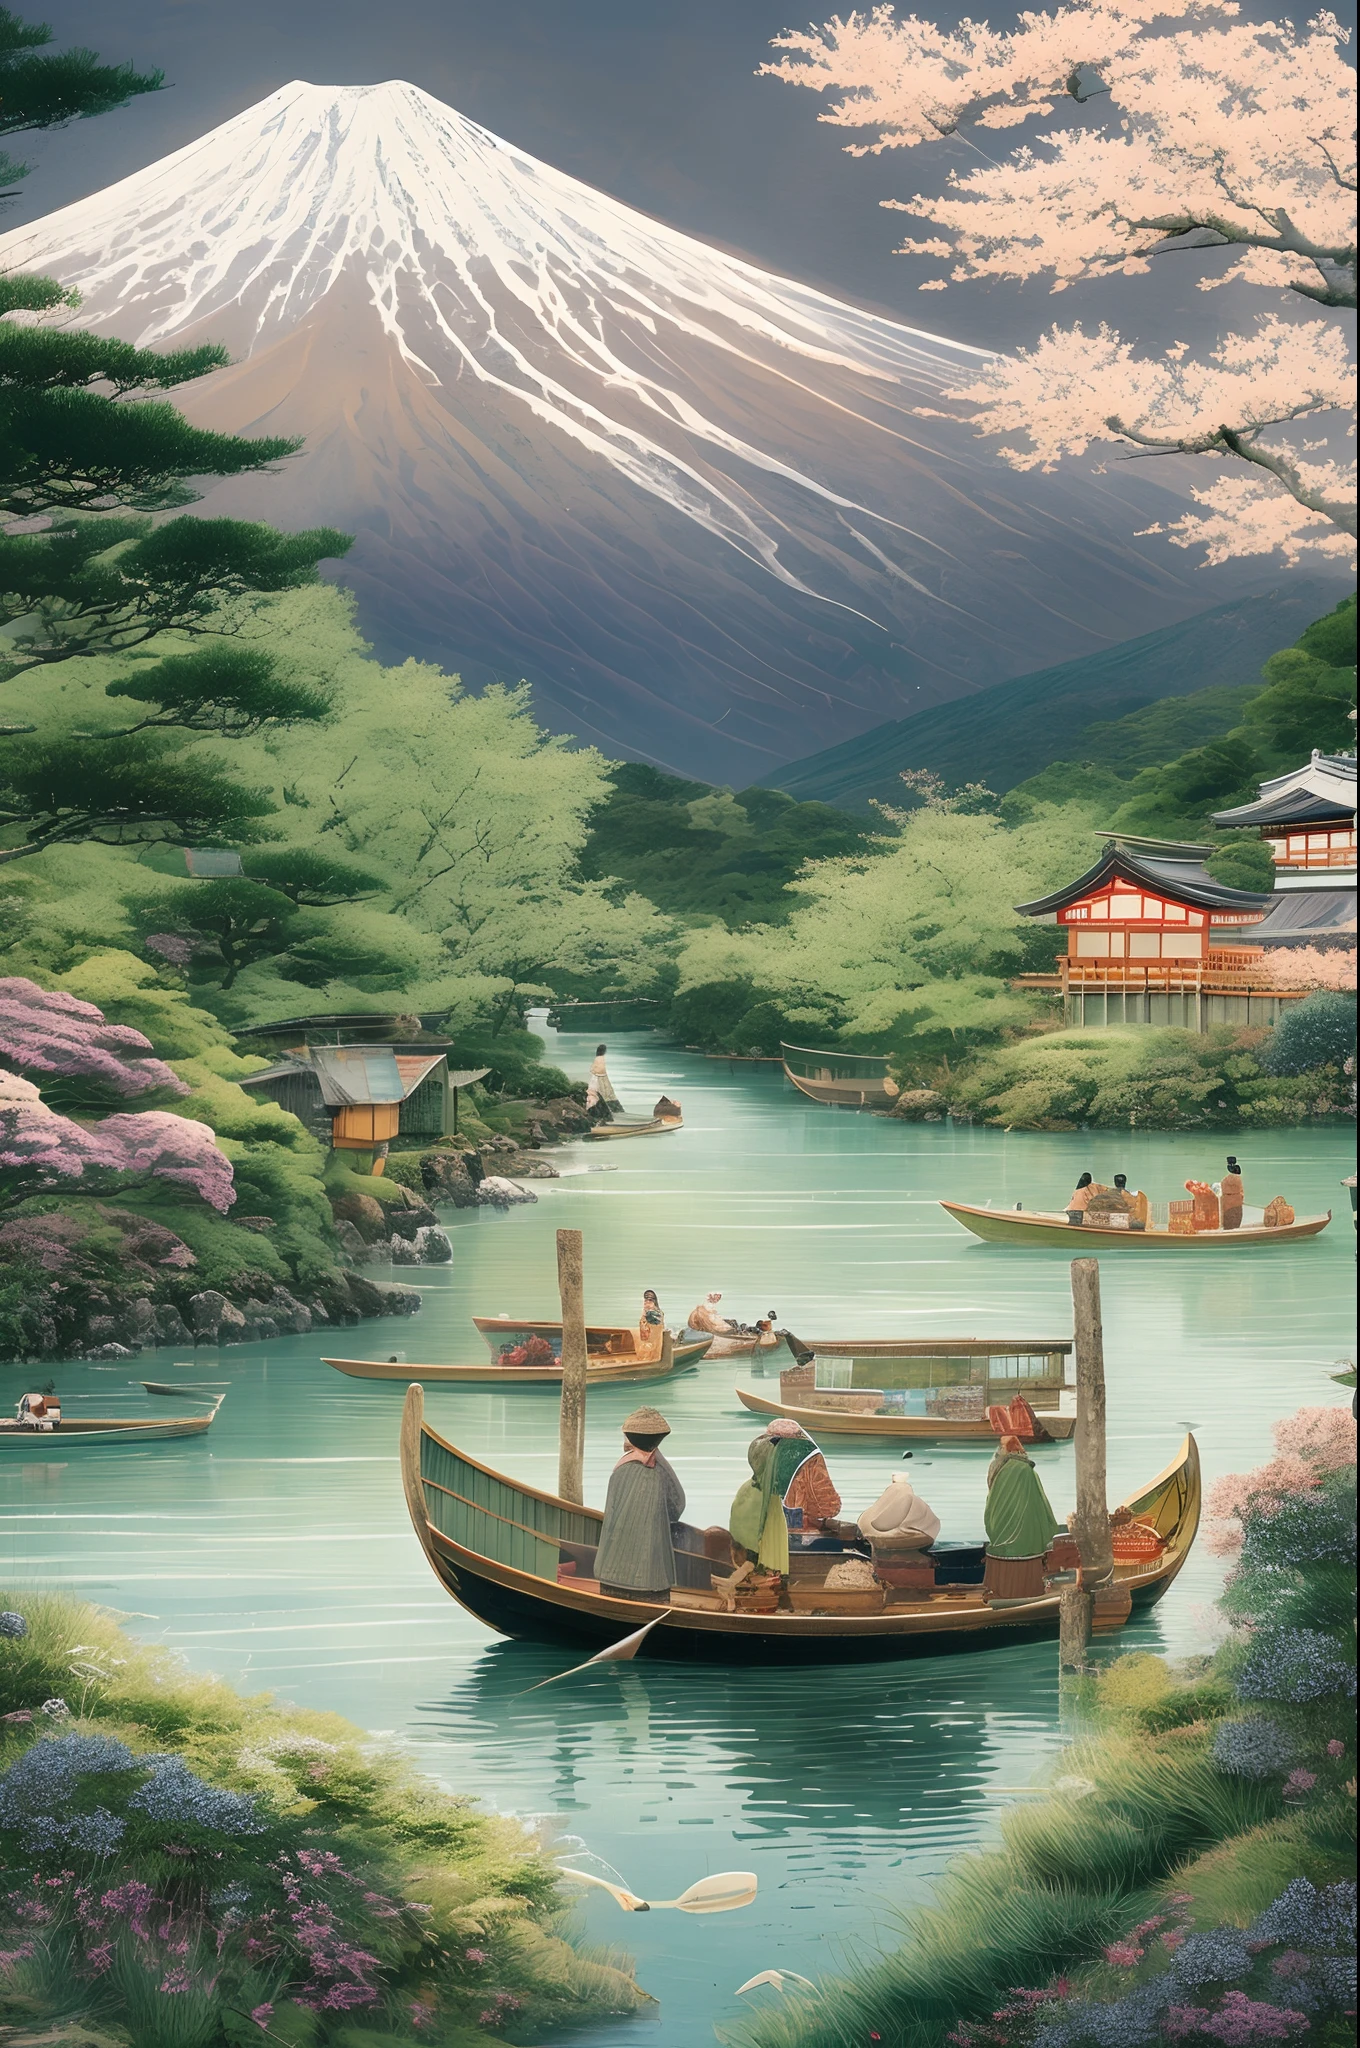 Гора Фудзи, символ природной красоты Японии, в окружении пышной зелени и чистейшей реки, местные рыбаки на традиционных лодках занимаются своим промыслом, сцена гармонии и традиций, Иллюстрация, цифровое искусство с вниманием к культурным деталям